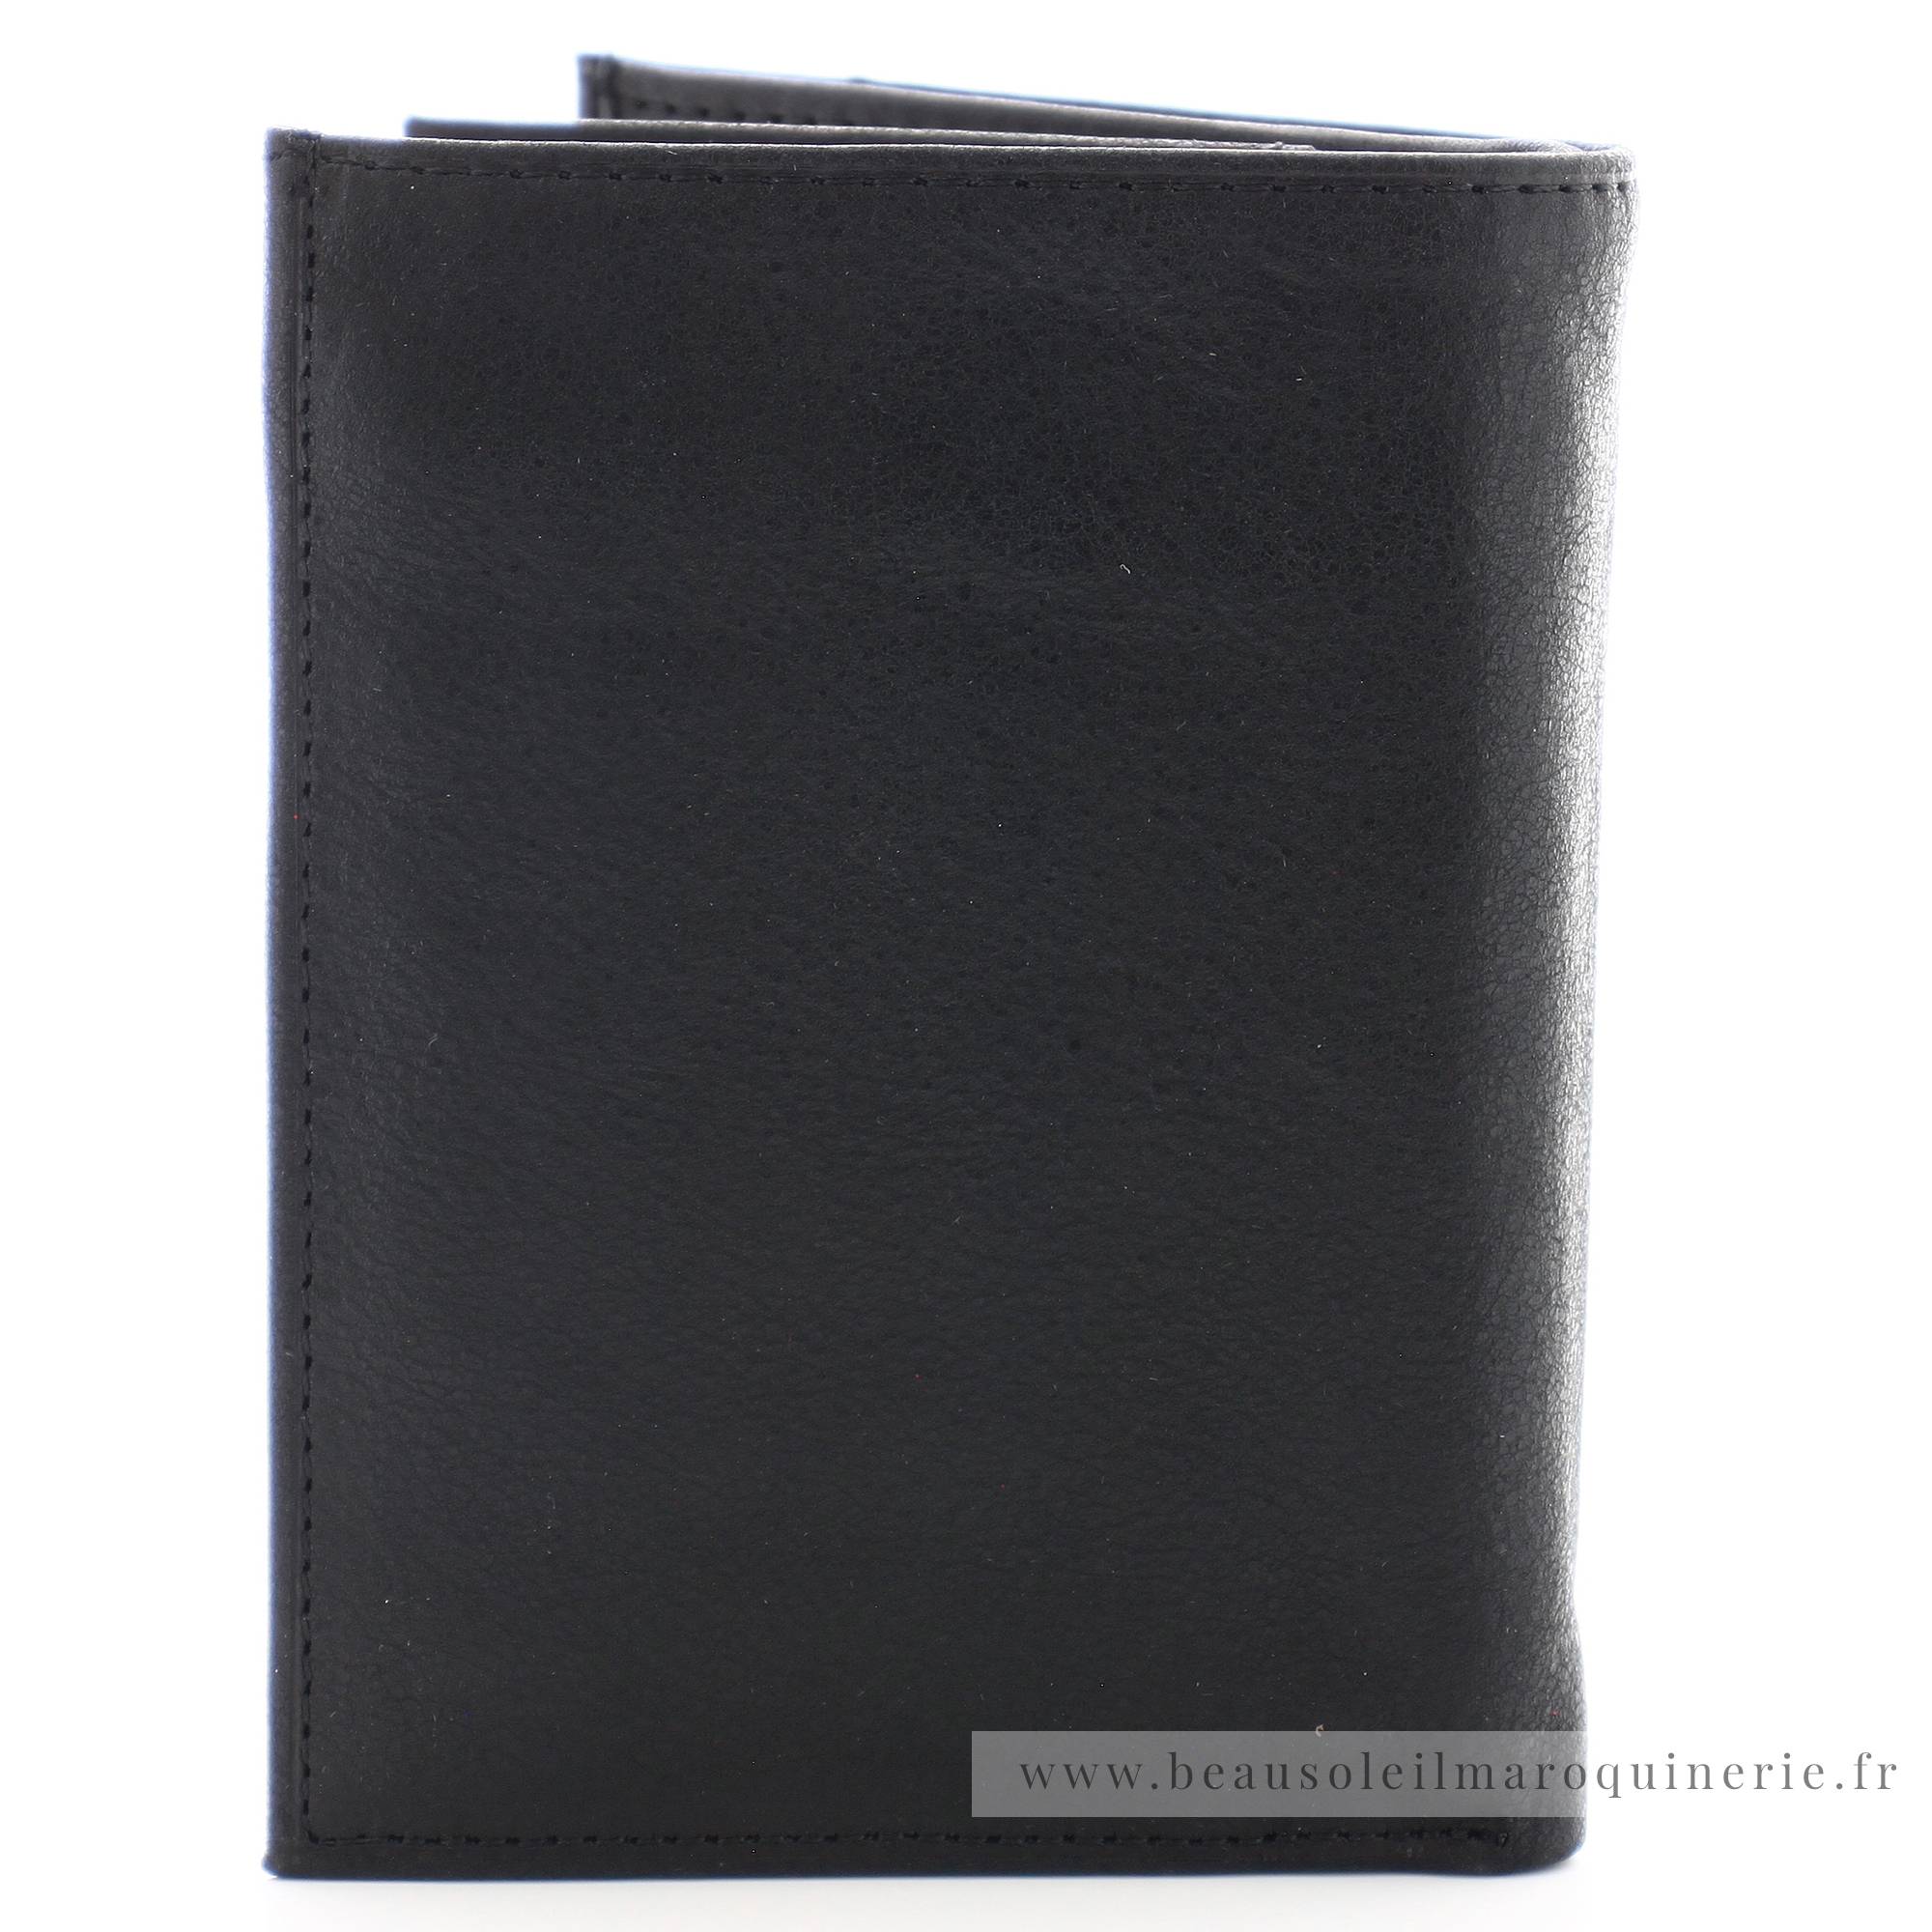 Portefeuille européen Arthur et Aston 1438-800 A couleur noir vue de dos